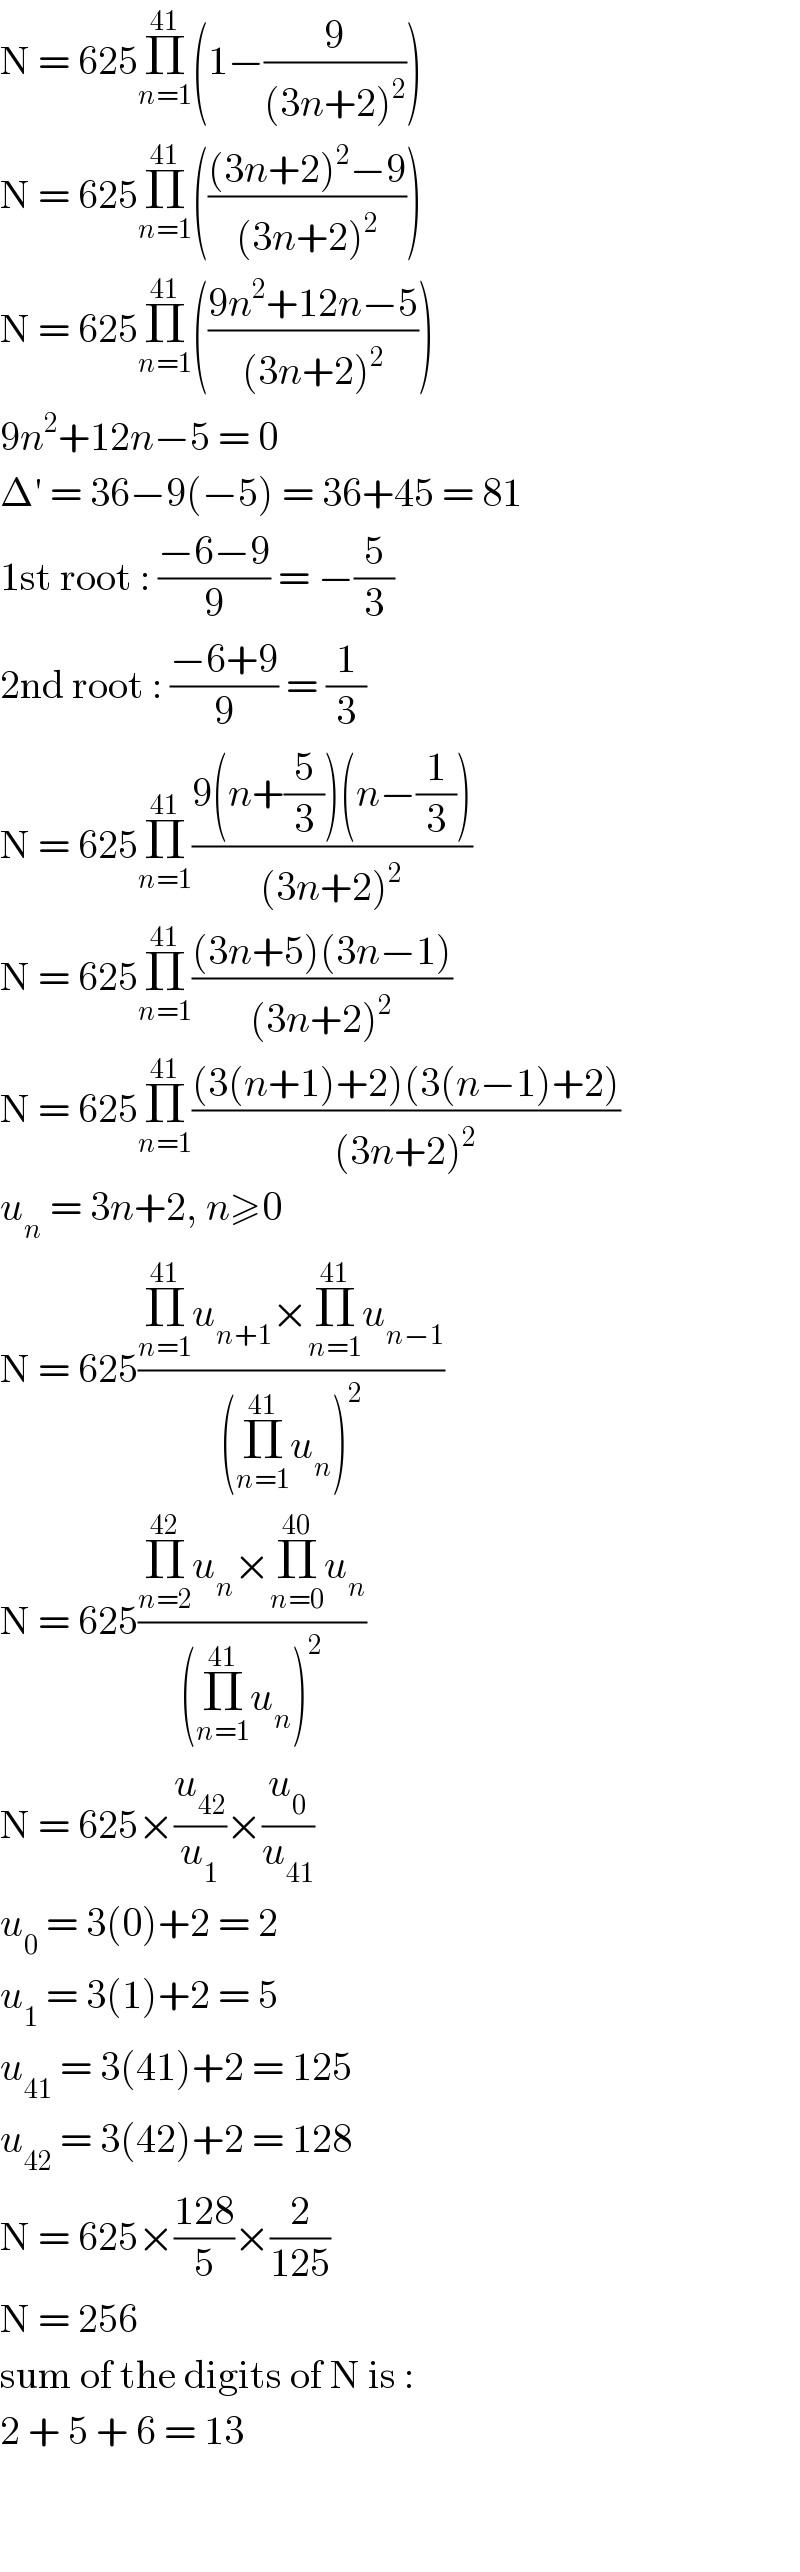 N = 625Π_(n=1) ^(41) (1−(9/((3n+2)^2 )))  N = 625Π_(n=1) ^(41) ((((3n+2)^2 −9)/((3n+2)^2 )))  N = 625Π_(n=1) ^(41) (((9n^2 +12n−5)/((3n+2)^2 )))  9n^2 +12n−5 = 0  Δ′ = 36−9(−5) = 36+45 = 81  1st root : ((−6−9)/9) = −(5/3)  2nd root : ((−6+9)/9) = (1/3)  N = 625Π_(n=1) ^(41) ((9(n+(5/3))(n−(1/3)))/((3n+2)^2 ))  N = 625Π_(n=1) ^(41) (((3n+5)(3n−1))/((3n+2)^2 ))  N = 625Π_(n=1) ^(41) (((3(n+1)+2)(3(n−1)+2))/((3n+2)^2 ))  u_n  = 3n+2, n≥0  N = 625((Π_(n=1) ^(41) u_(n+1) ×Π_(n=1) ^(41) u_(n−1) )/((Π_(n=1) ^(41) u_n )^2 ))  N = 625((Π_(n=2) ^(42) u_n ×Π_(n=0) ^(40) u_n )/((Π_(n=1) ^(41) u_n )^2 ))  N = 625×(u_(42) /u_1 )×(u_0 /u_(41) )  u_0  = 3(0)+2 = 2  u_1  = 3(1)+2 = 5  u_(41)  = 3(41)+2 = 125  u_(42)  = 3(42)+2 = 128  N = 625×((128)/5)×(2/(125))  N = 256  sum of the digits of N is :  2 + 5 + 6 = 13      